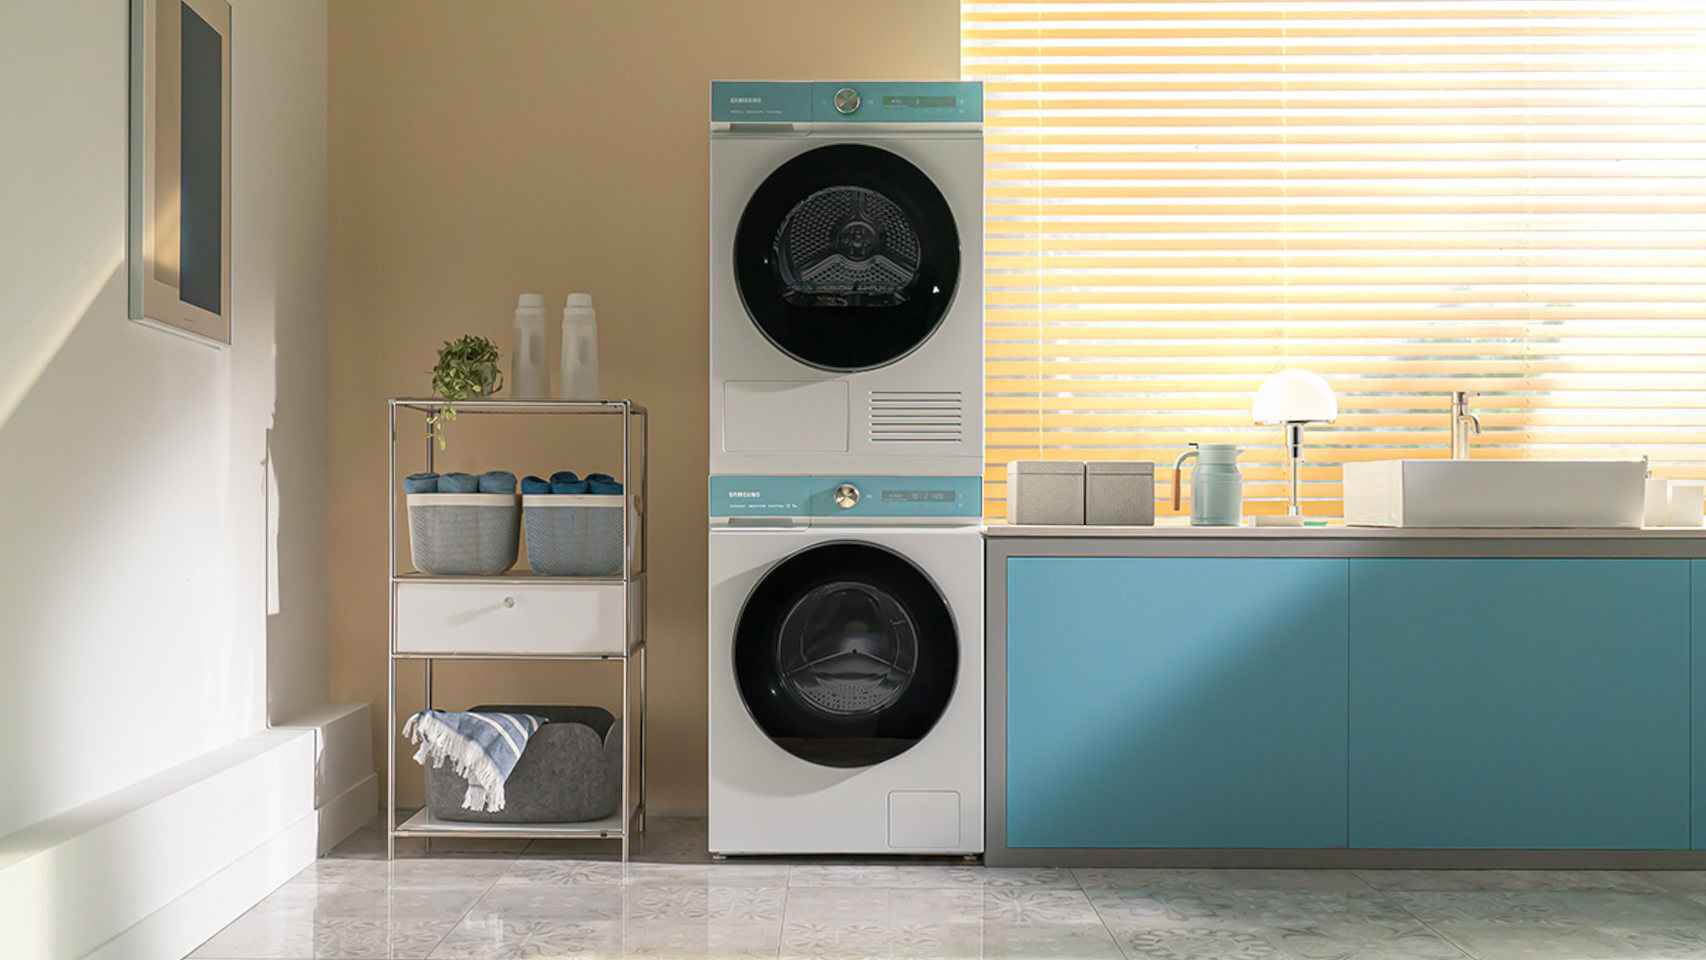 La nueva lavadora de Samsung limpia la ropa con agua fría usando Inteligencia Artificial